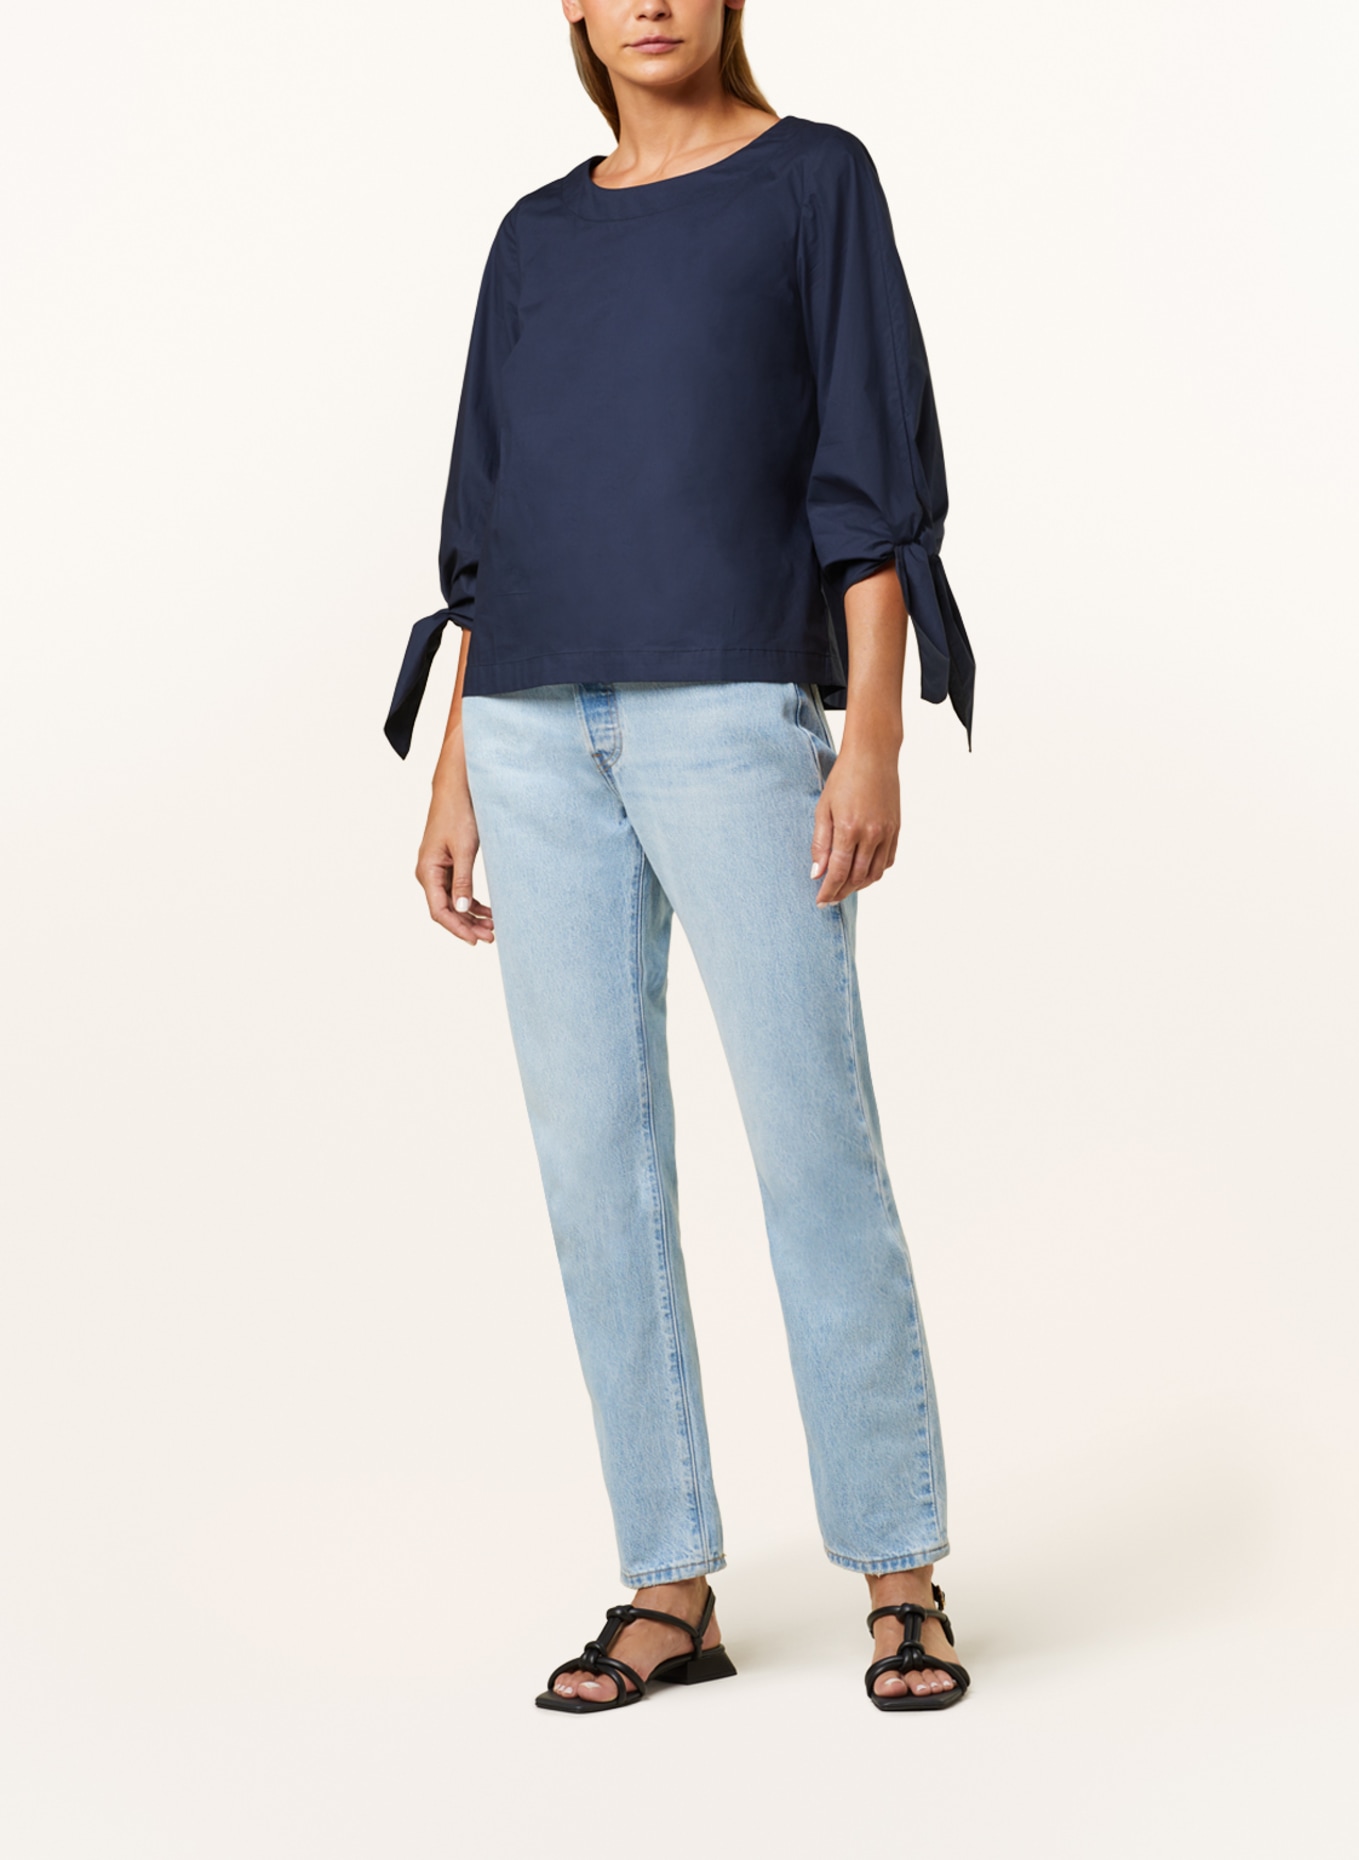 CATNOIR Shirt blouse, Color: DARK BLUE (Image 2)